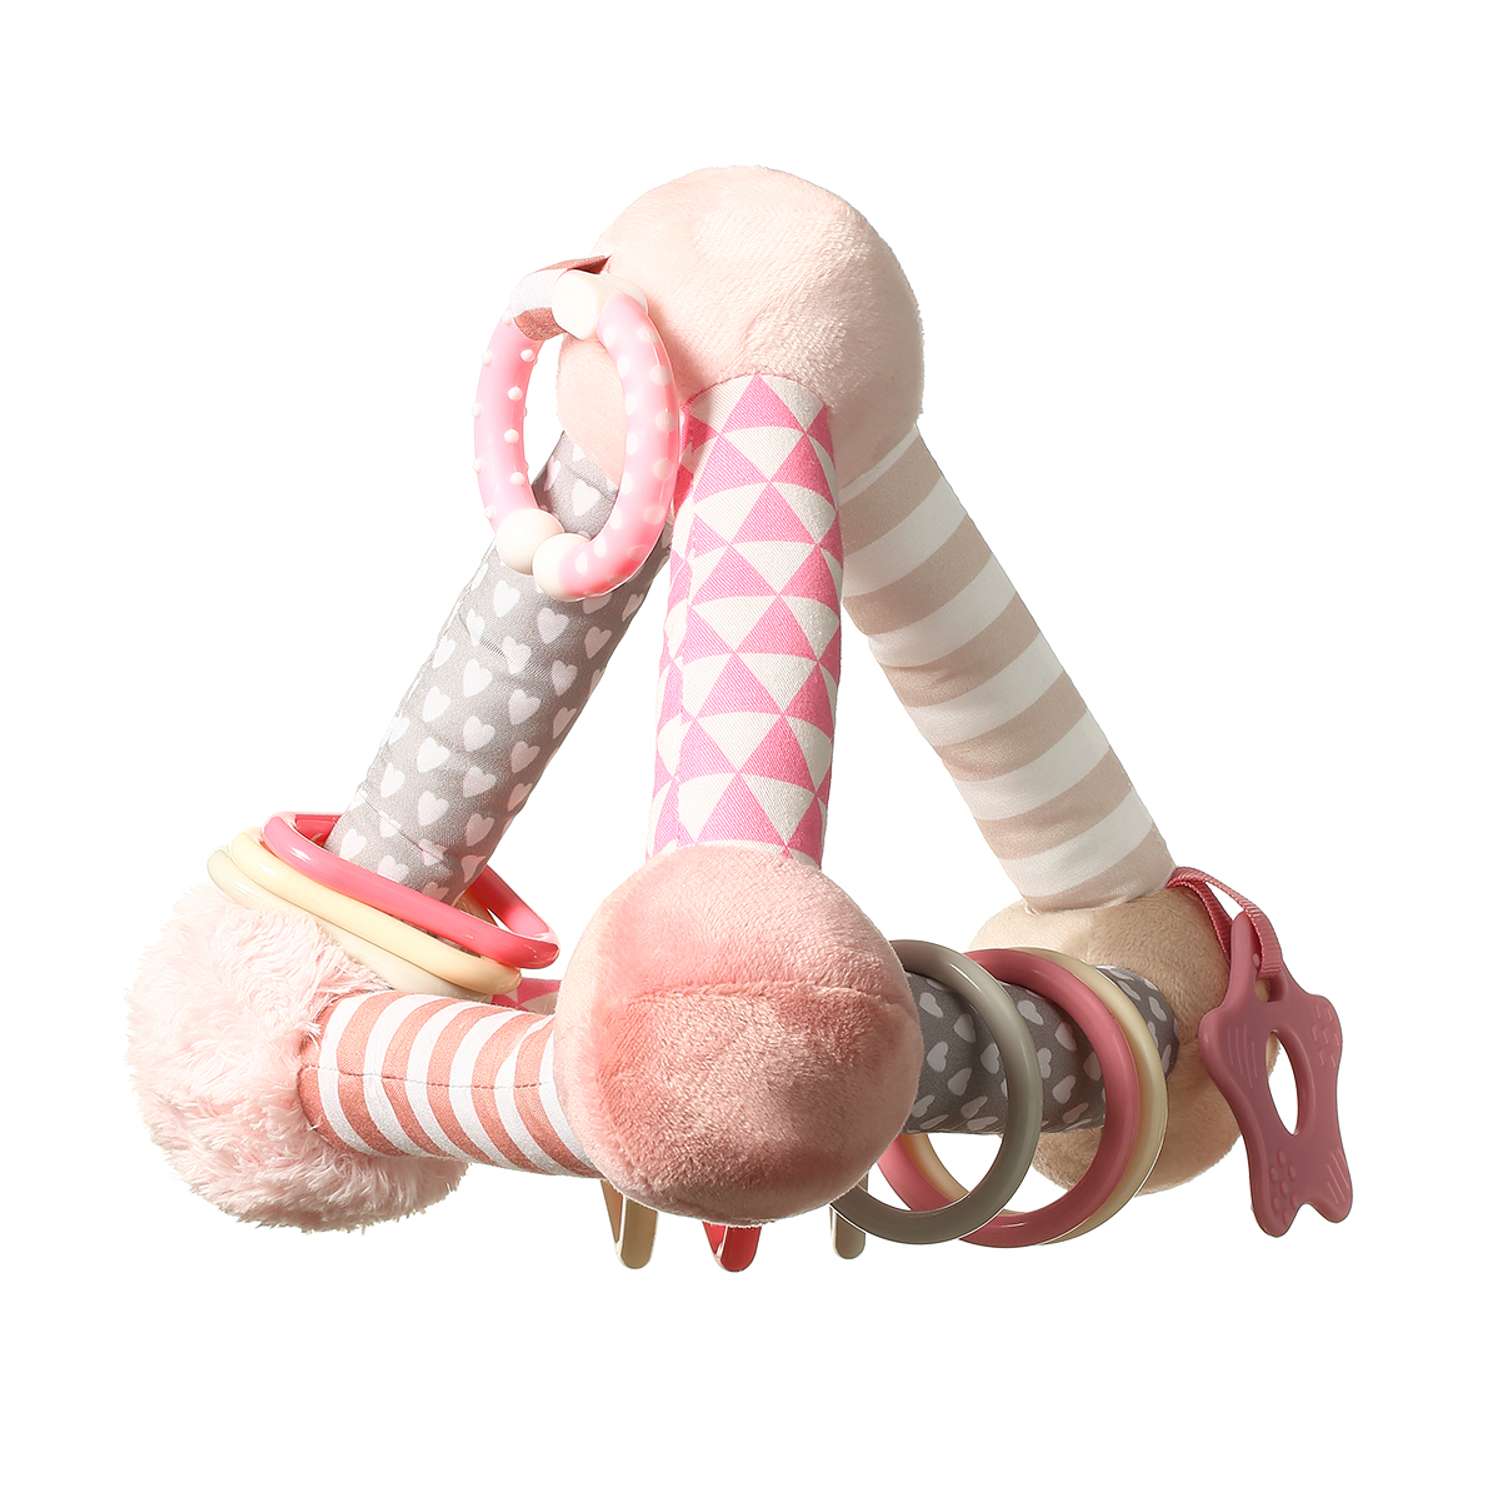 Развивающая игрушка Babyono Pyramid розовая Арт.898/01 - фото 1